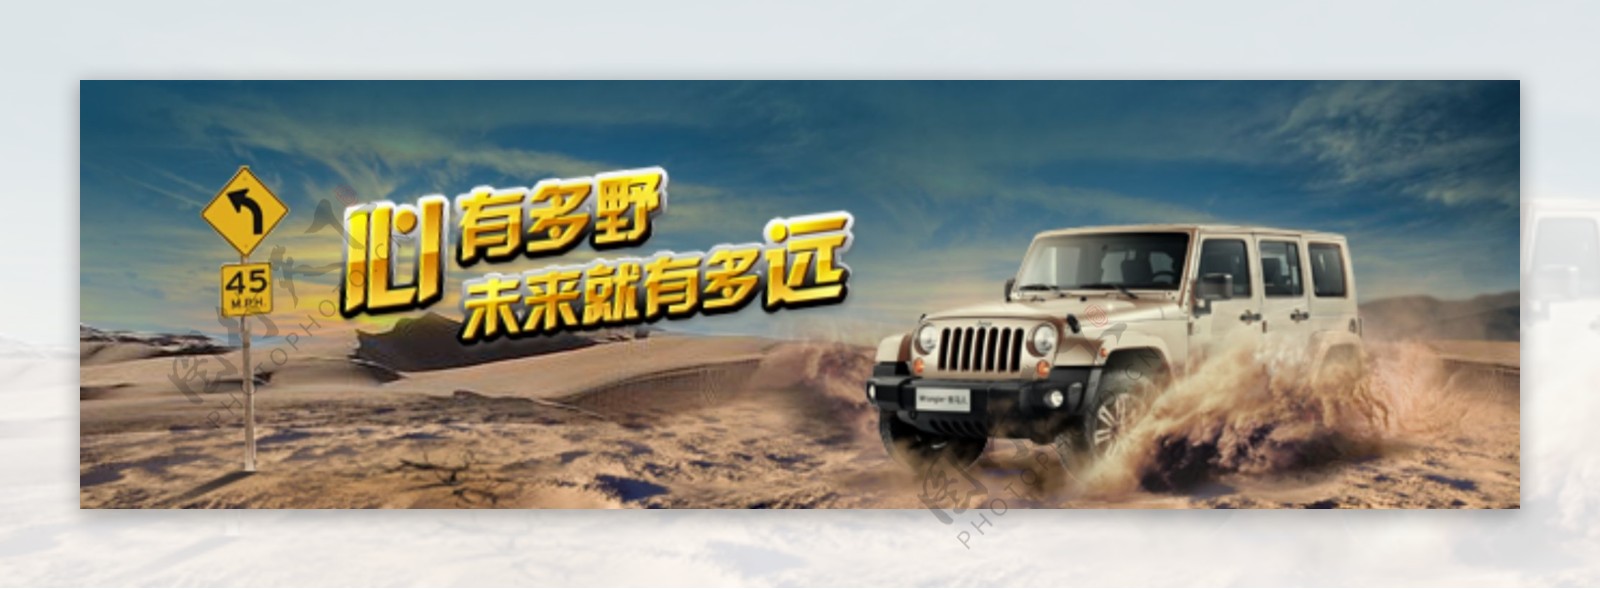 越野车广告图设计